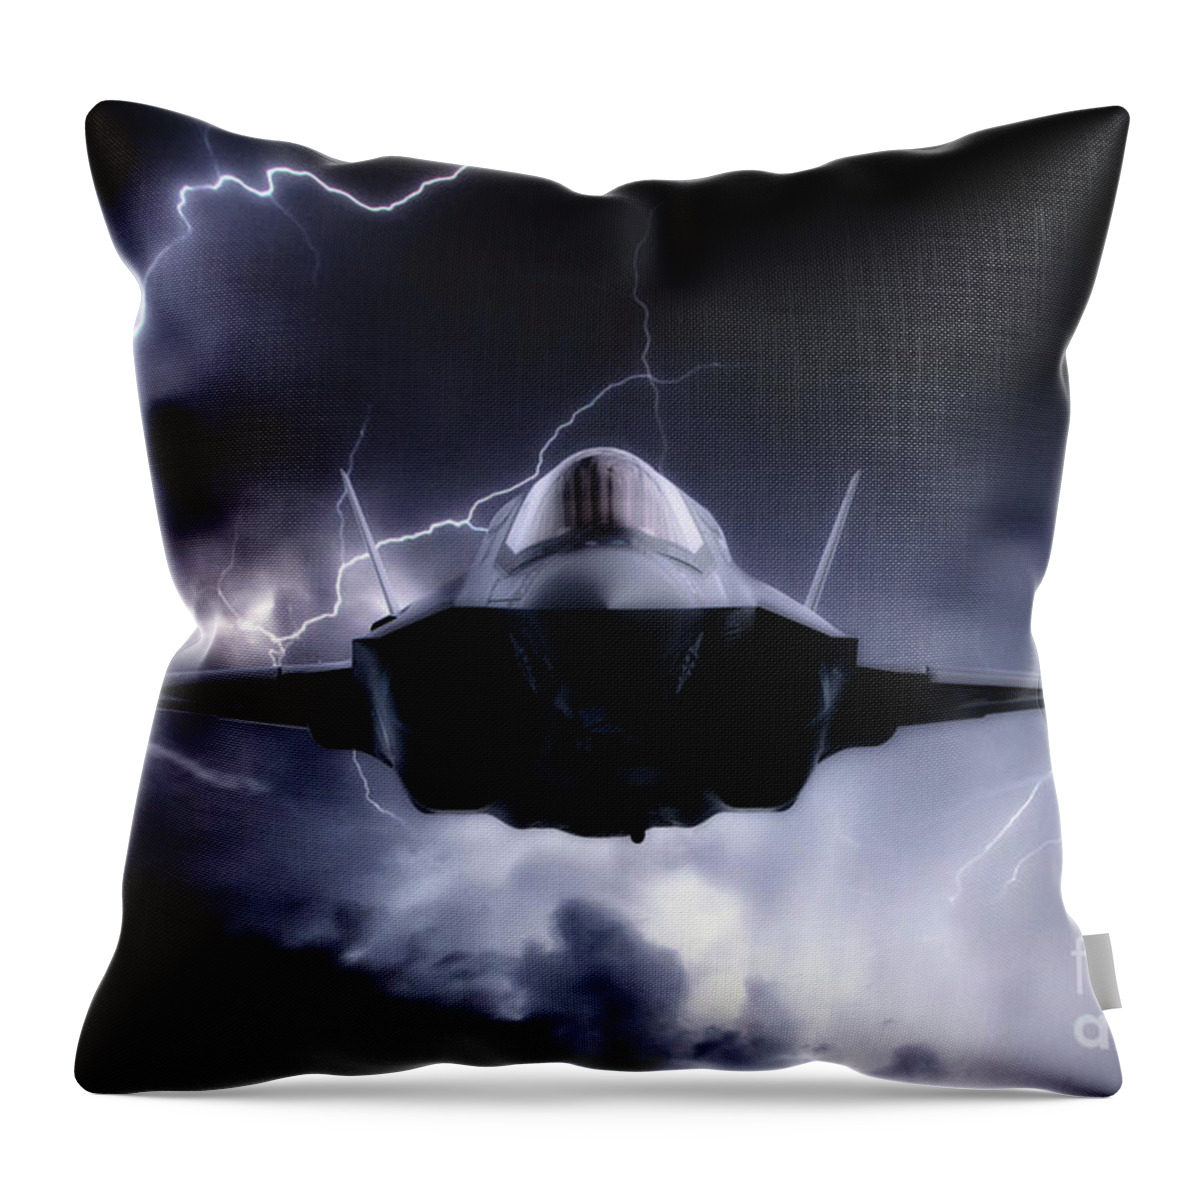 F35 Throw Pillow featuring the digital art F-35 Next Gen Lightning by Airpower Art